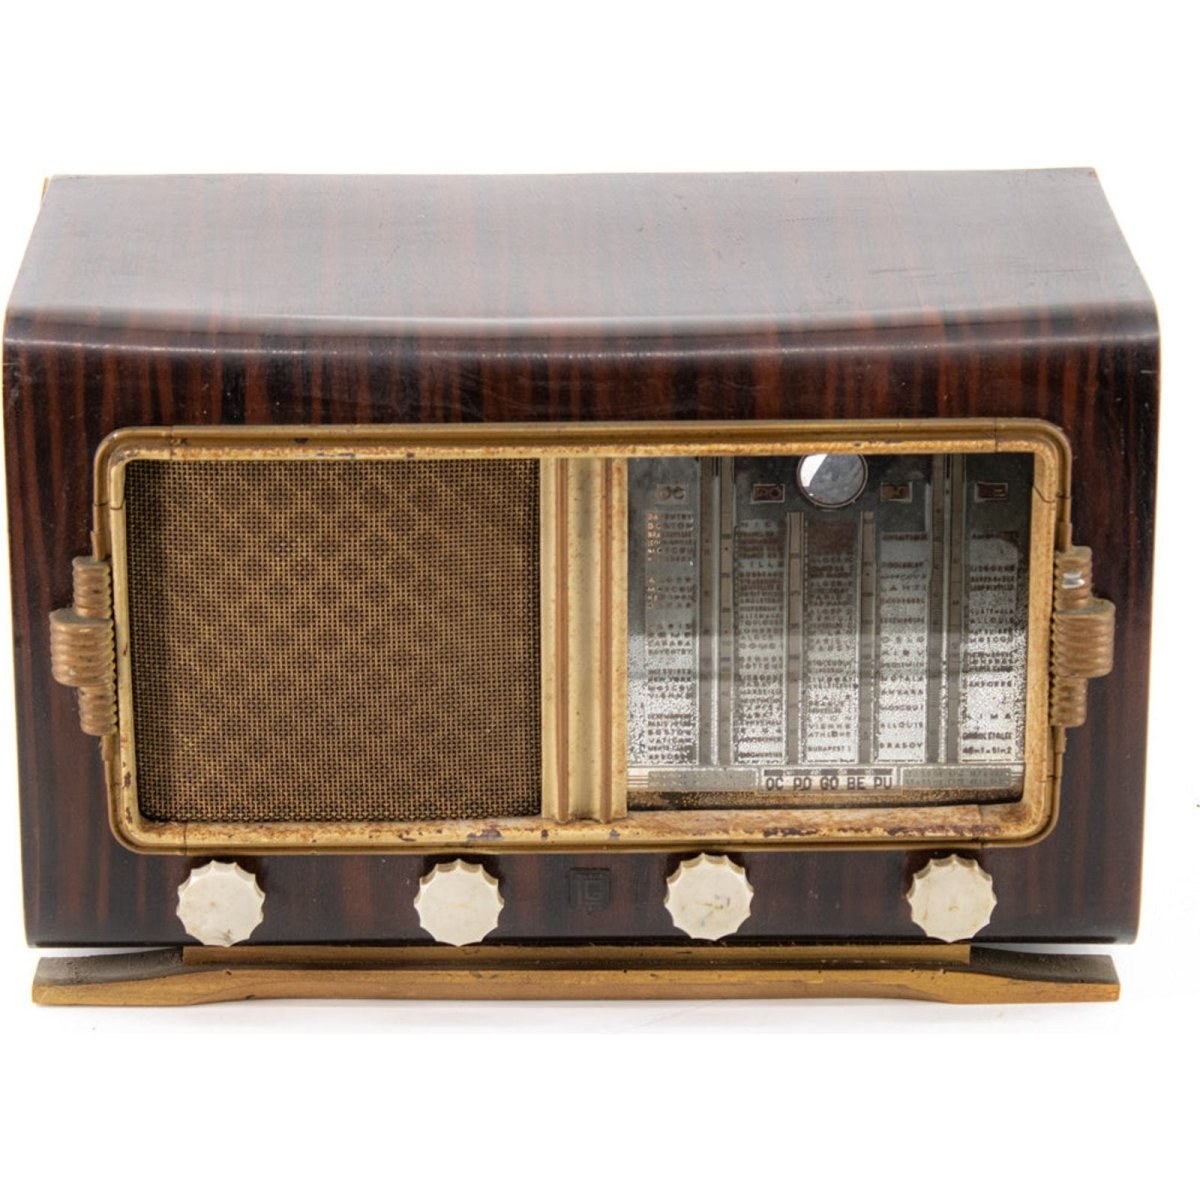 Radio Bluetooth LG Paris Vintage 50’S enceinte connectée française haut de gamme absolument prodige radio vintage